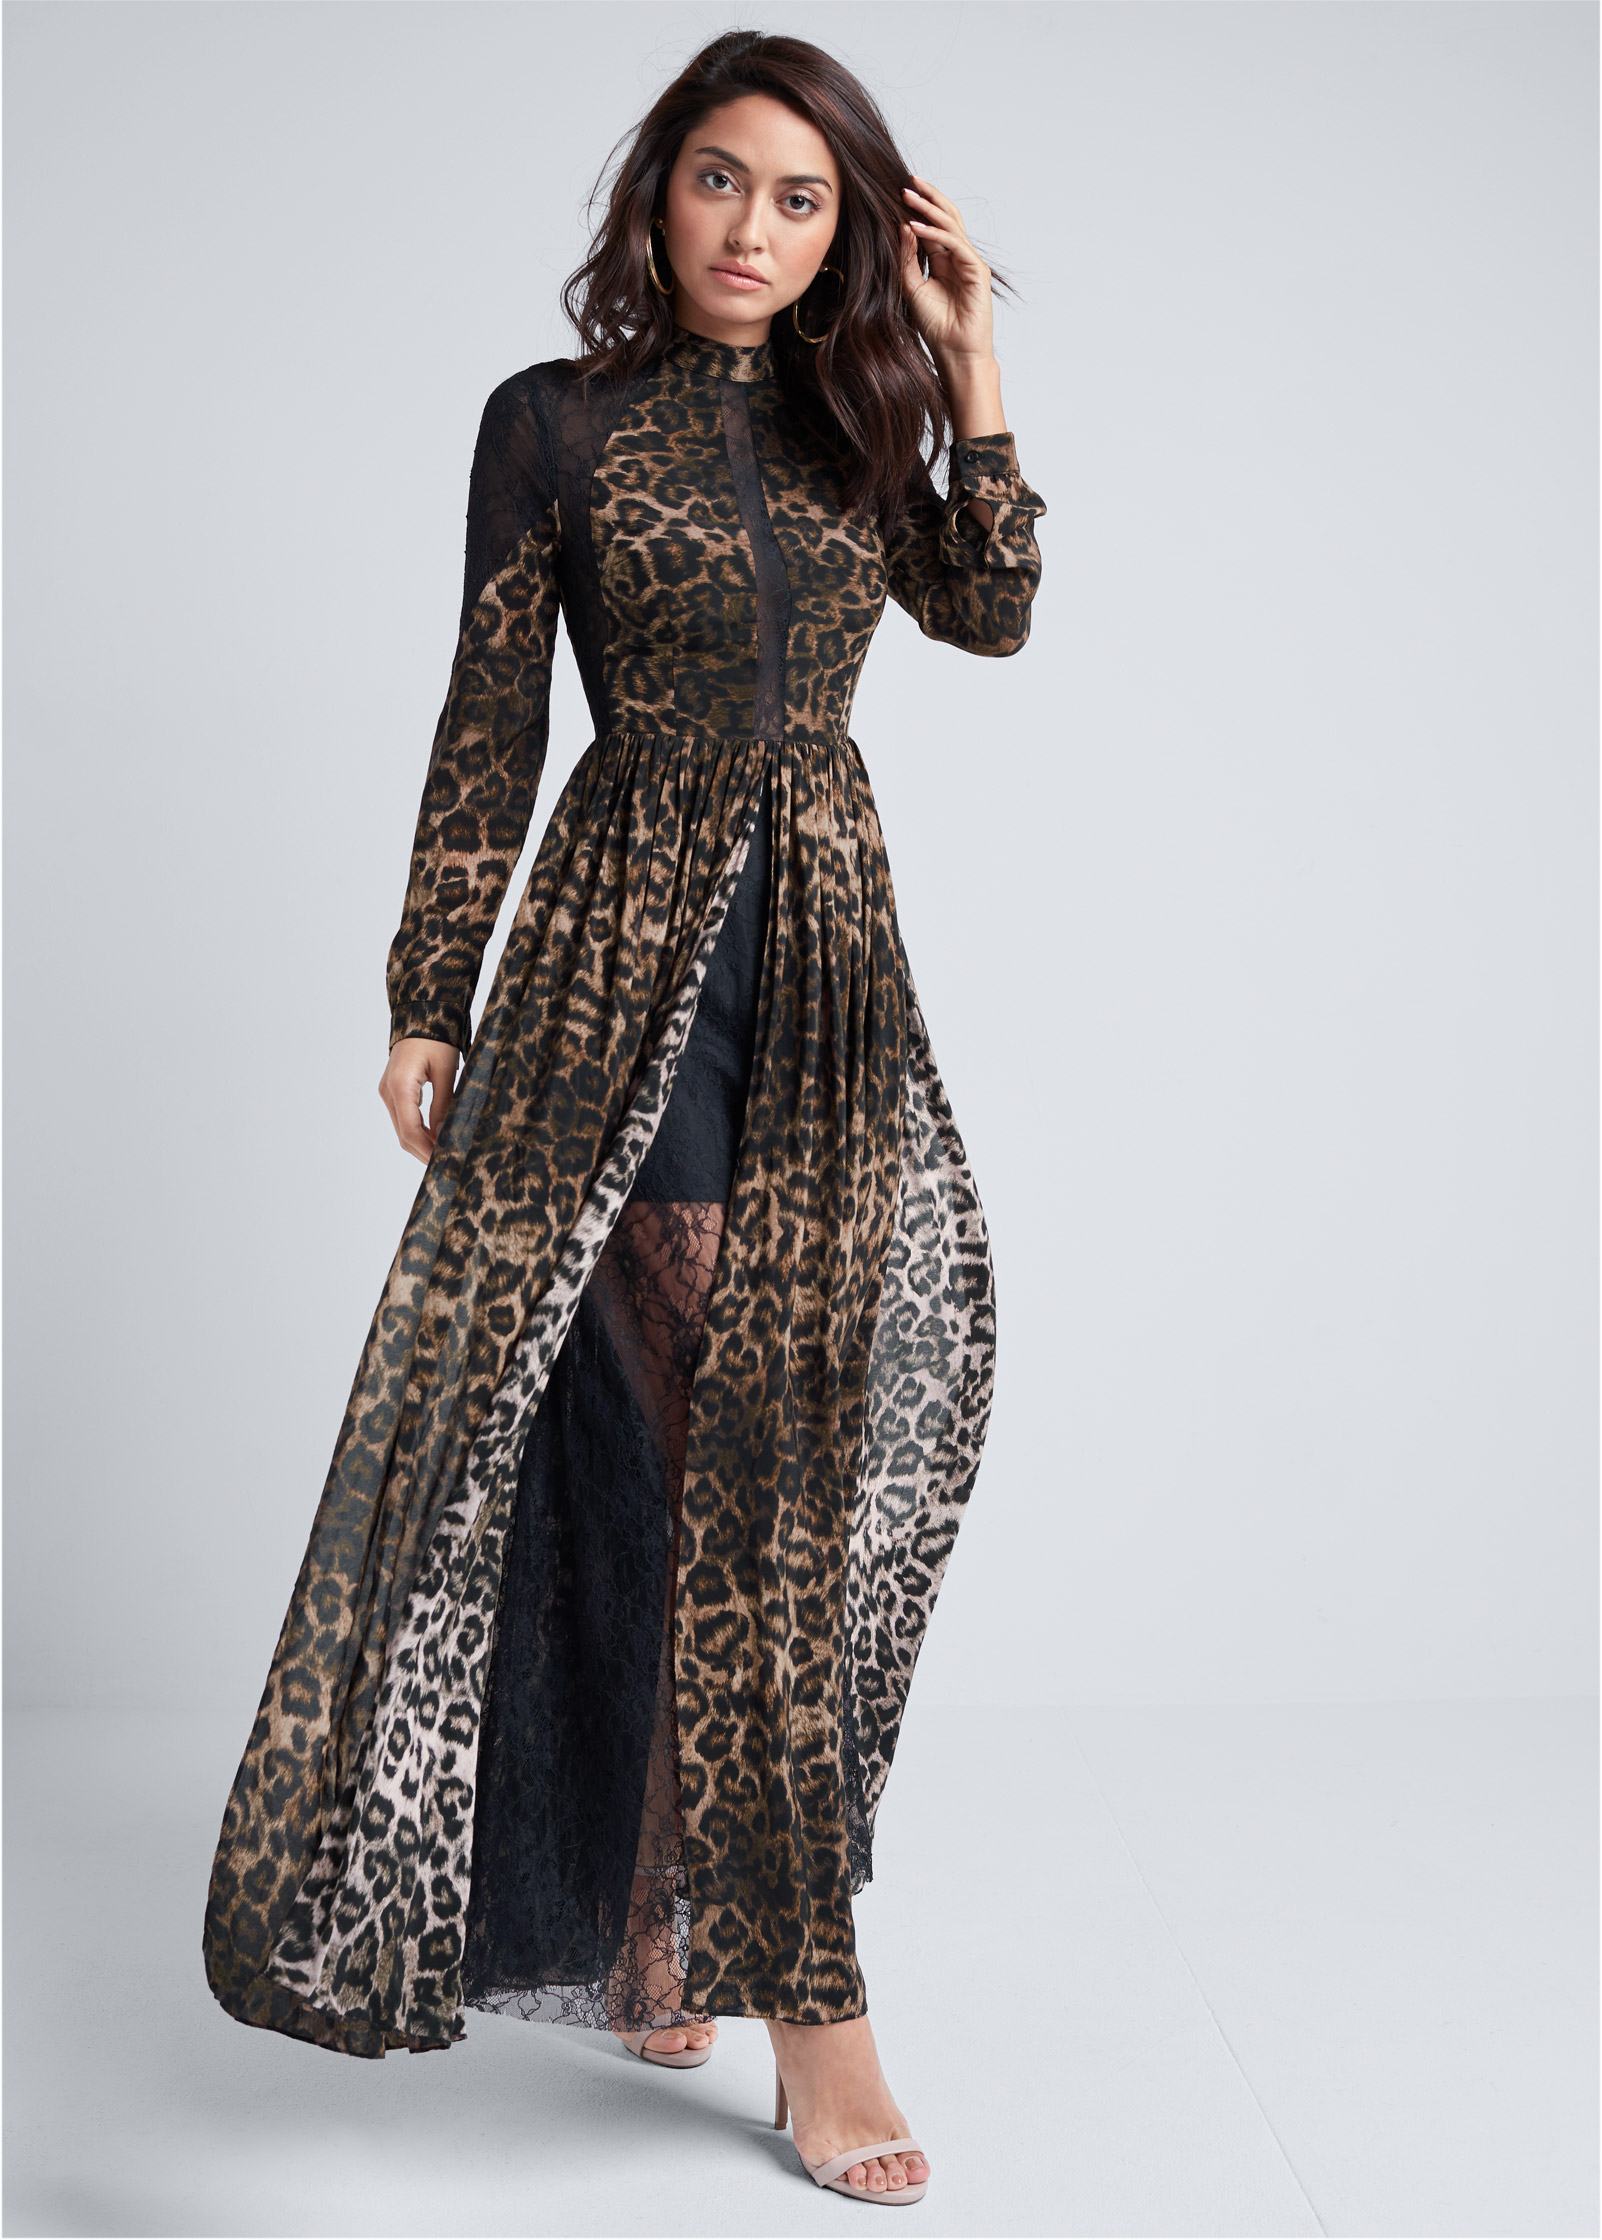 leopard lace dress